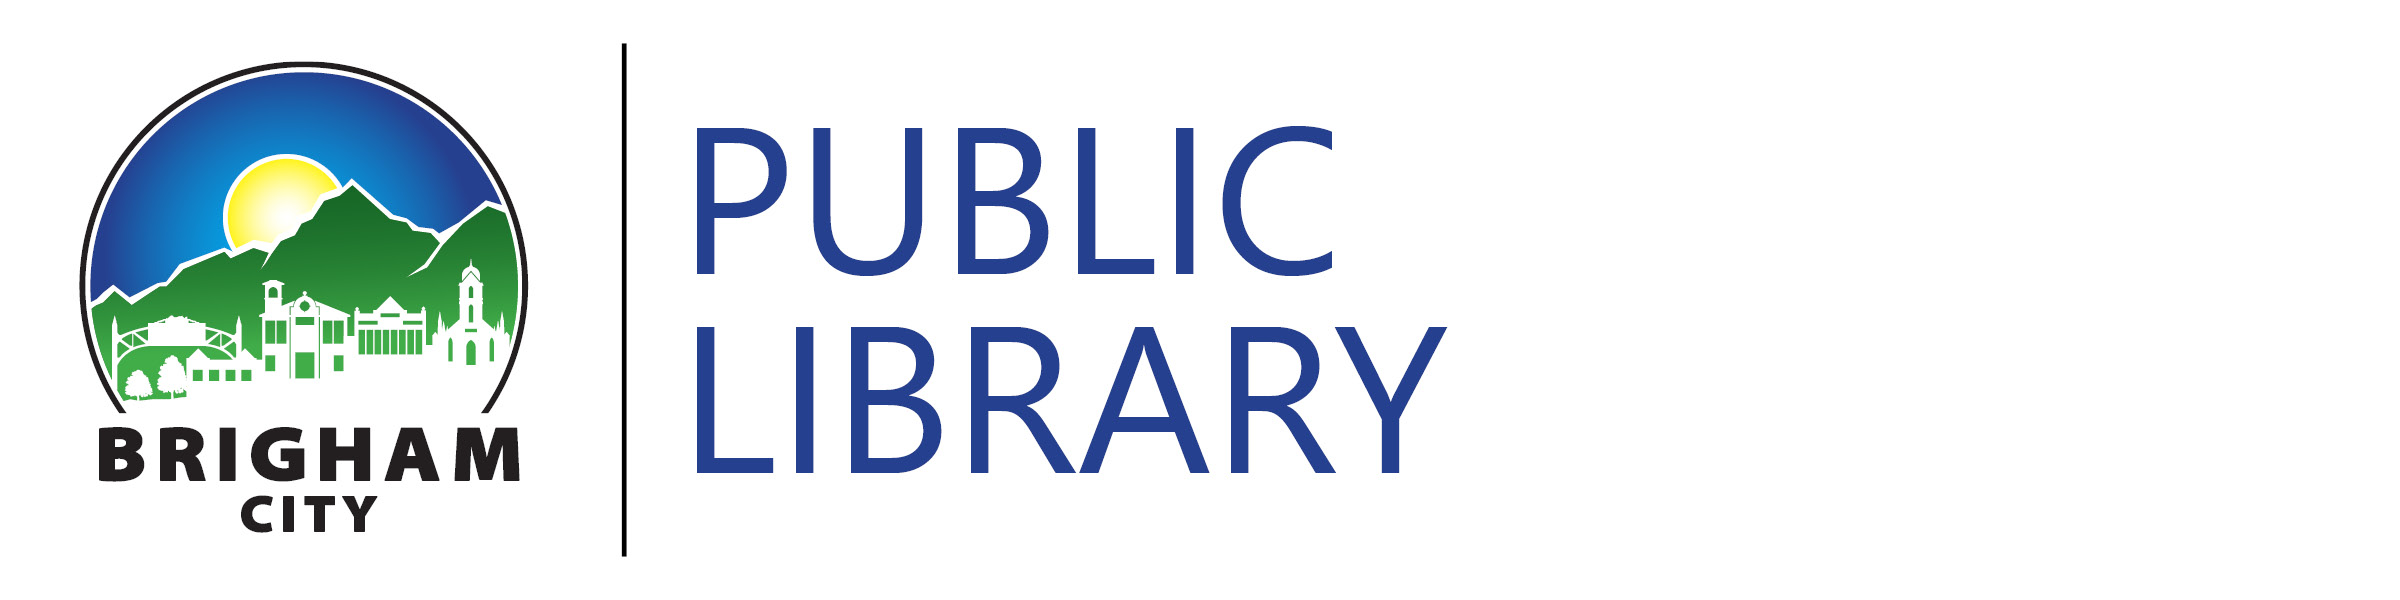 Brigham Public Library